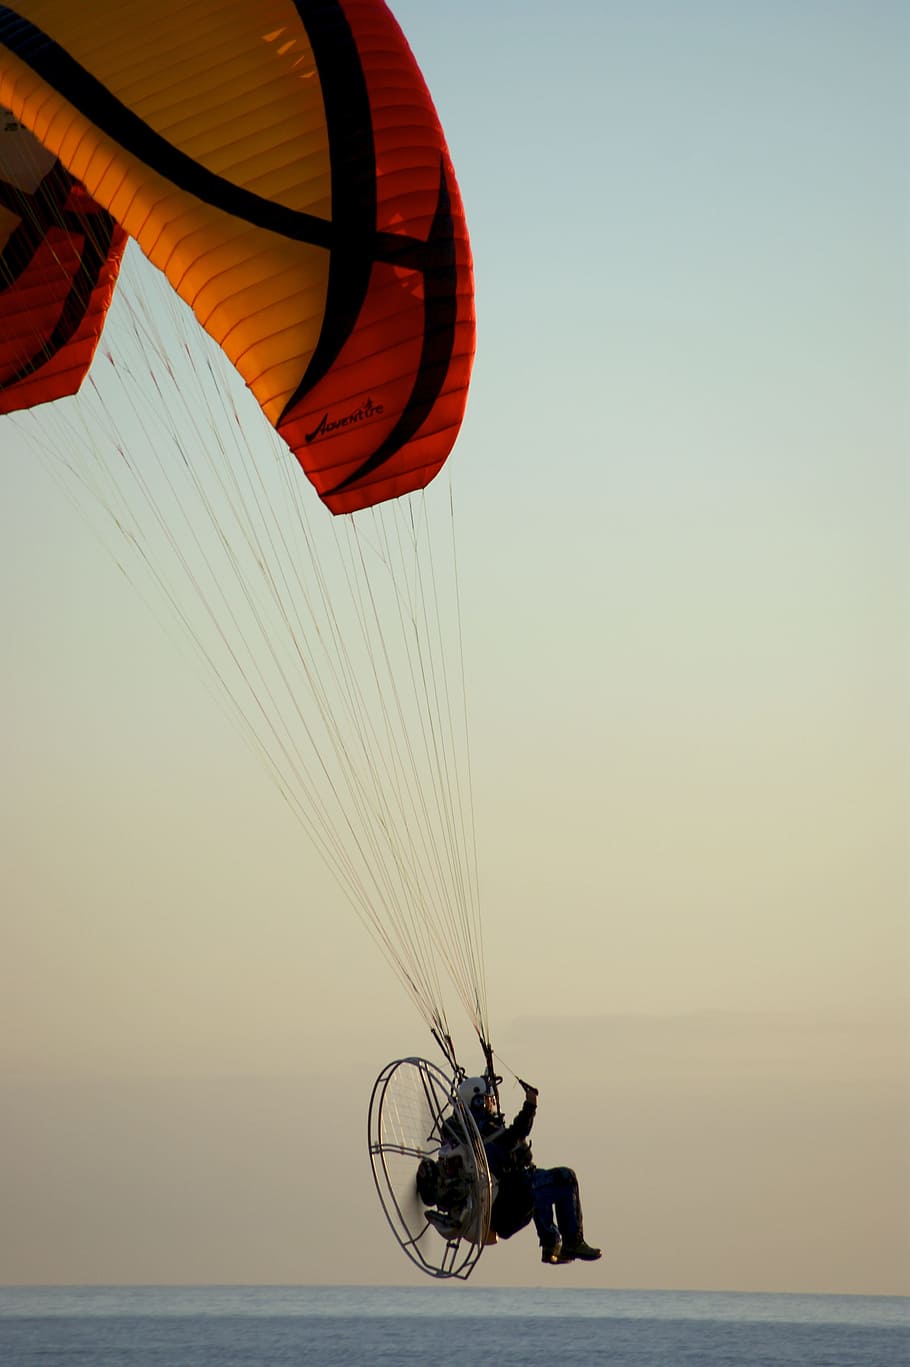 Paraglider, Motor, Sea, red, abendstimmung, movement, attraction, fun, evening, parachute